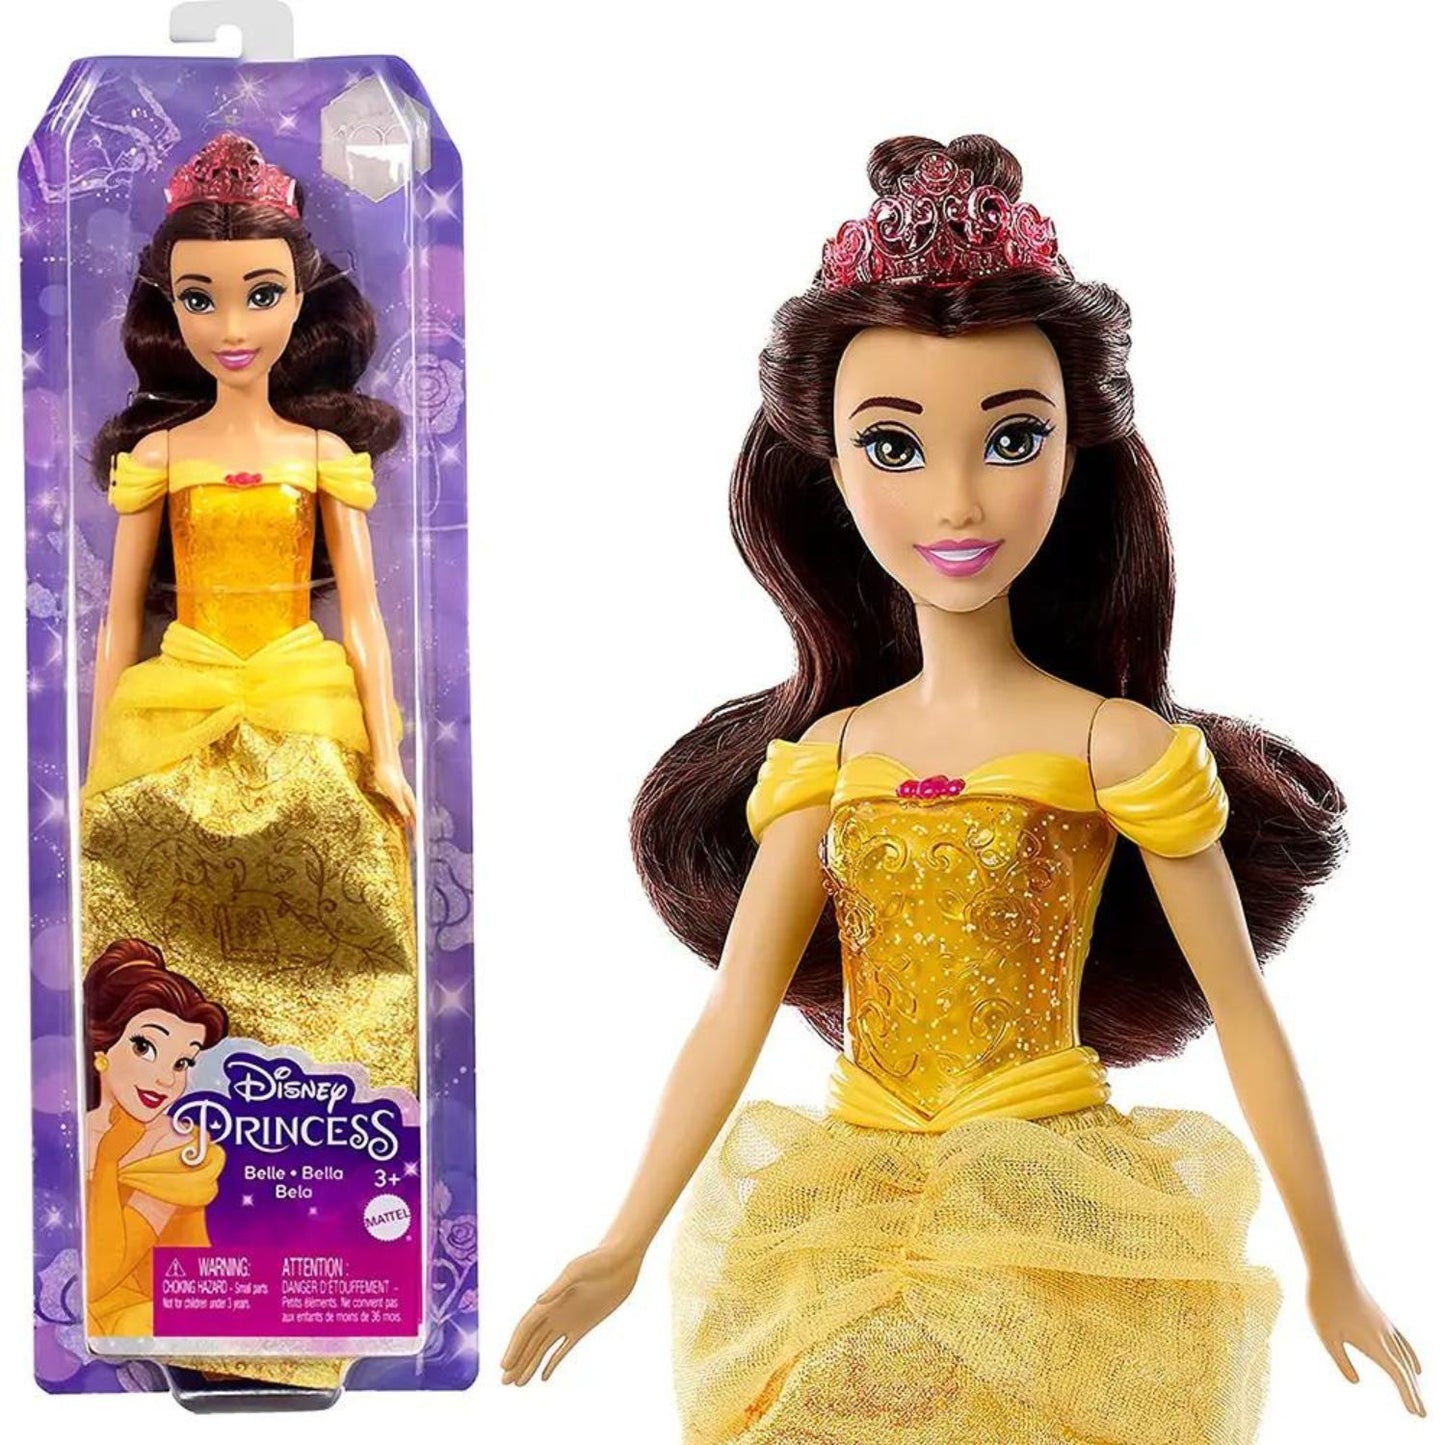 Fashion doll Disney Princess HLW02